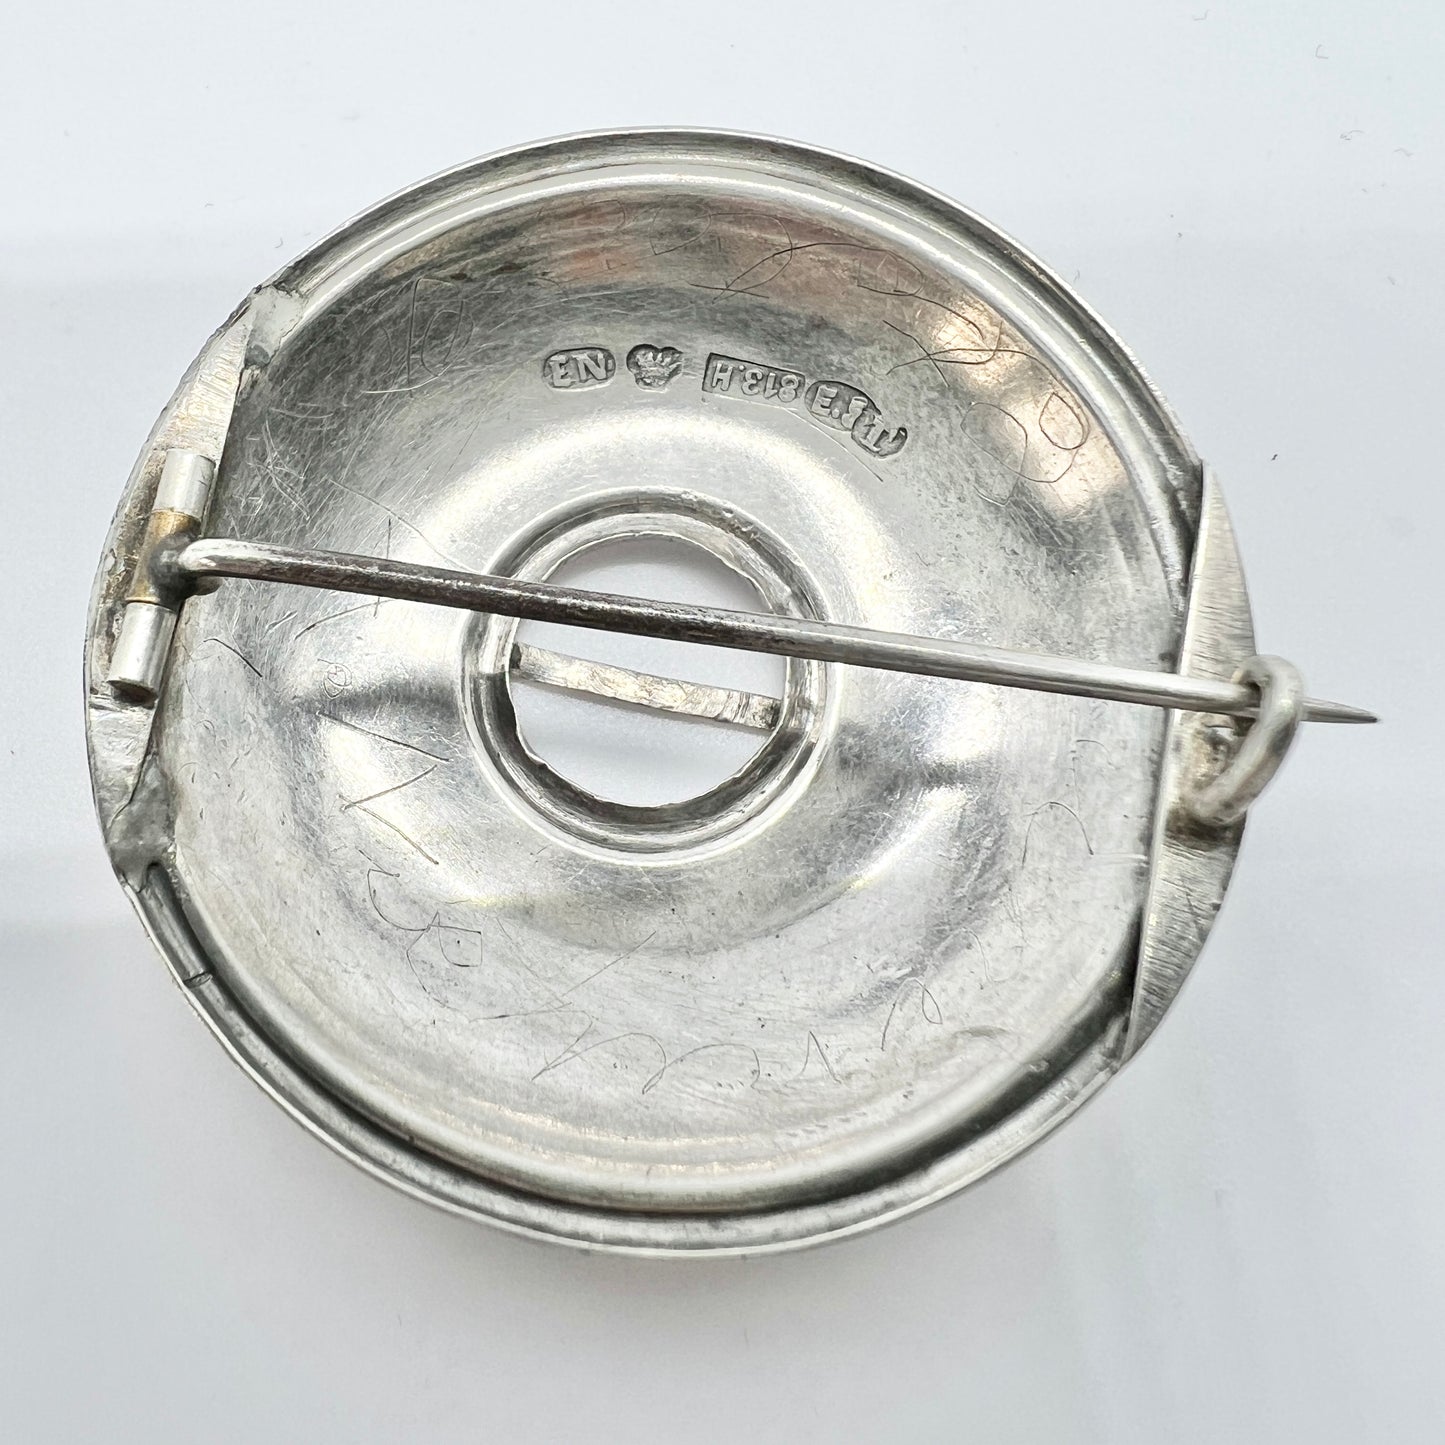 Emil Nikkilä, Finland 1910, Antique Solid Silver Traditional Shield Brooch Brooch.